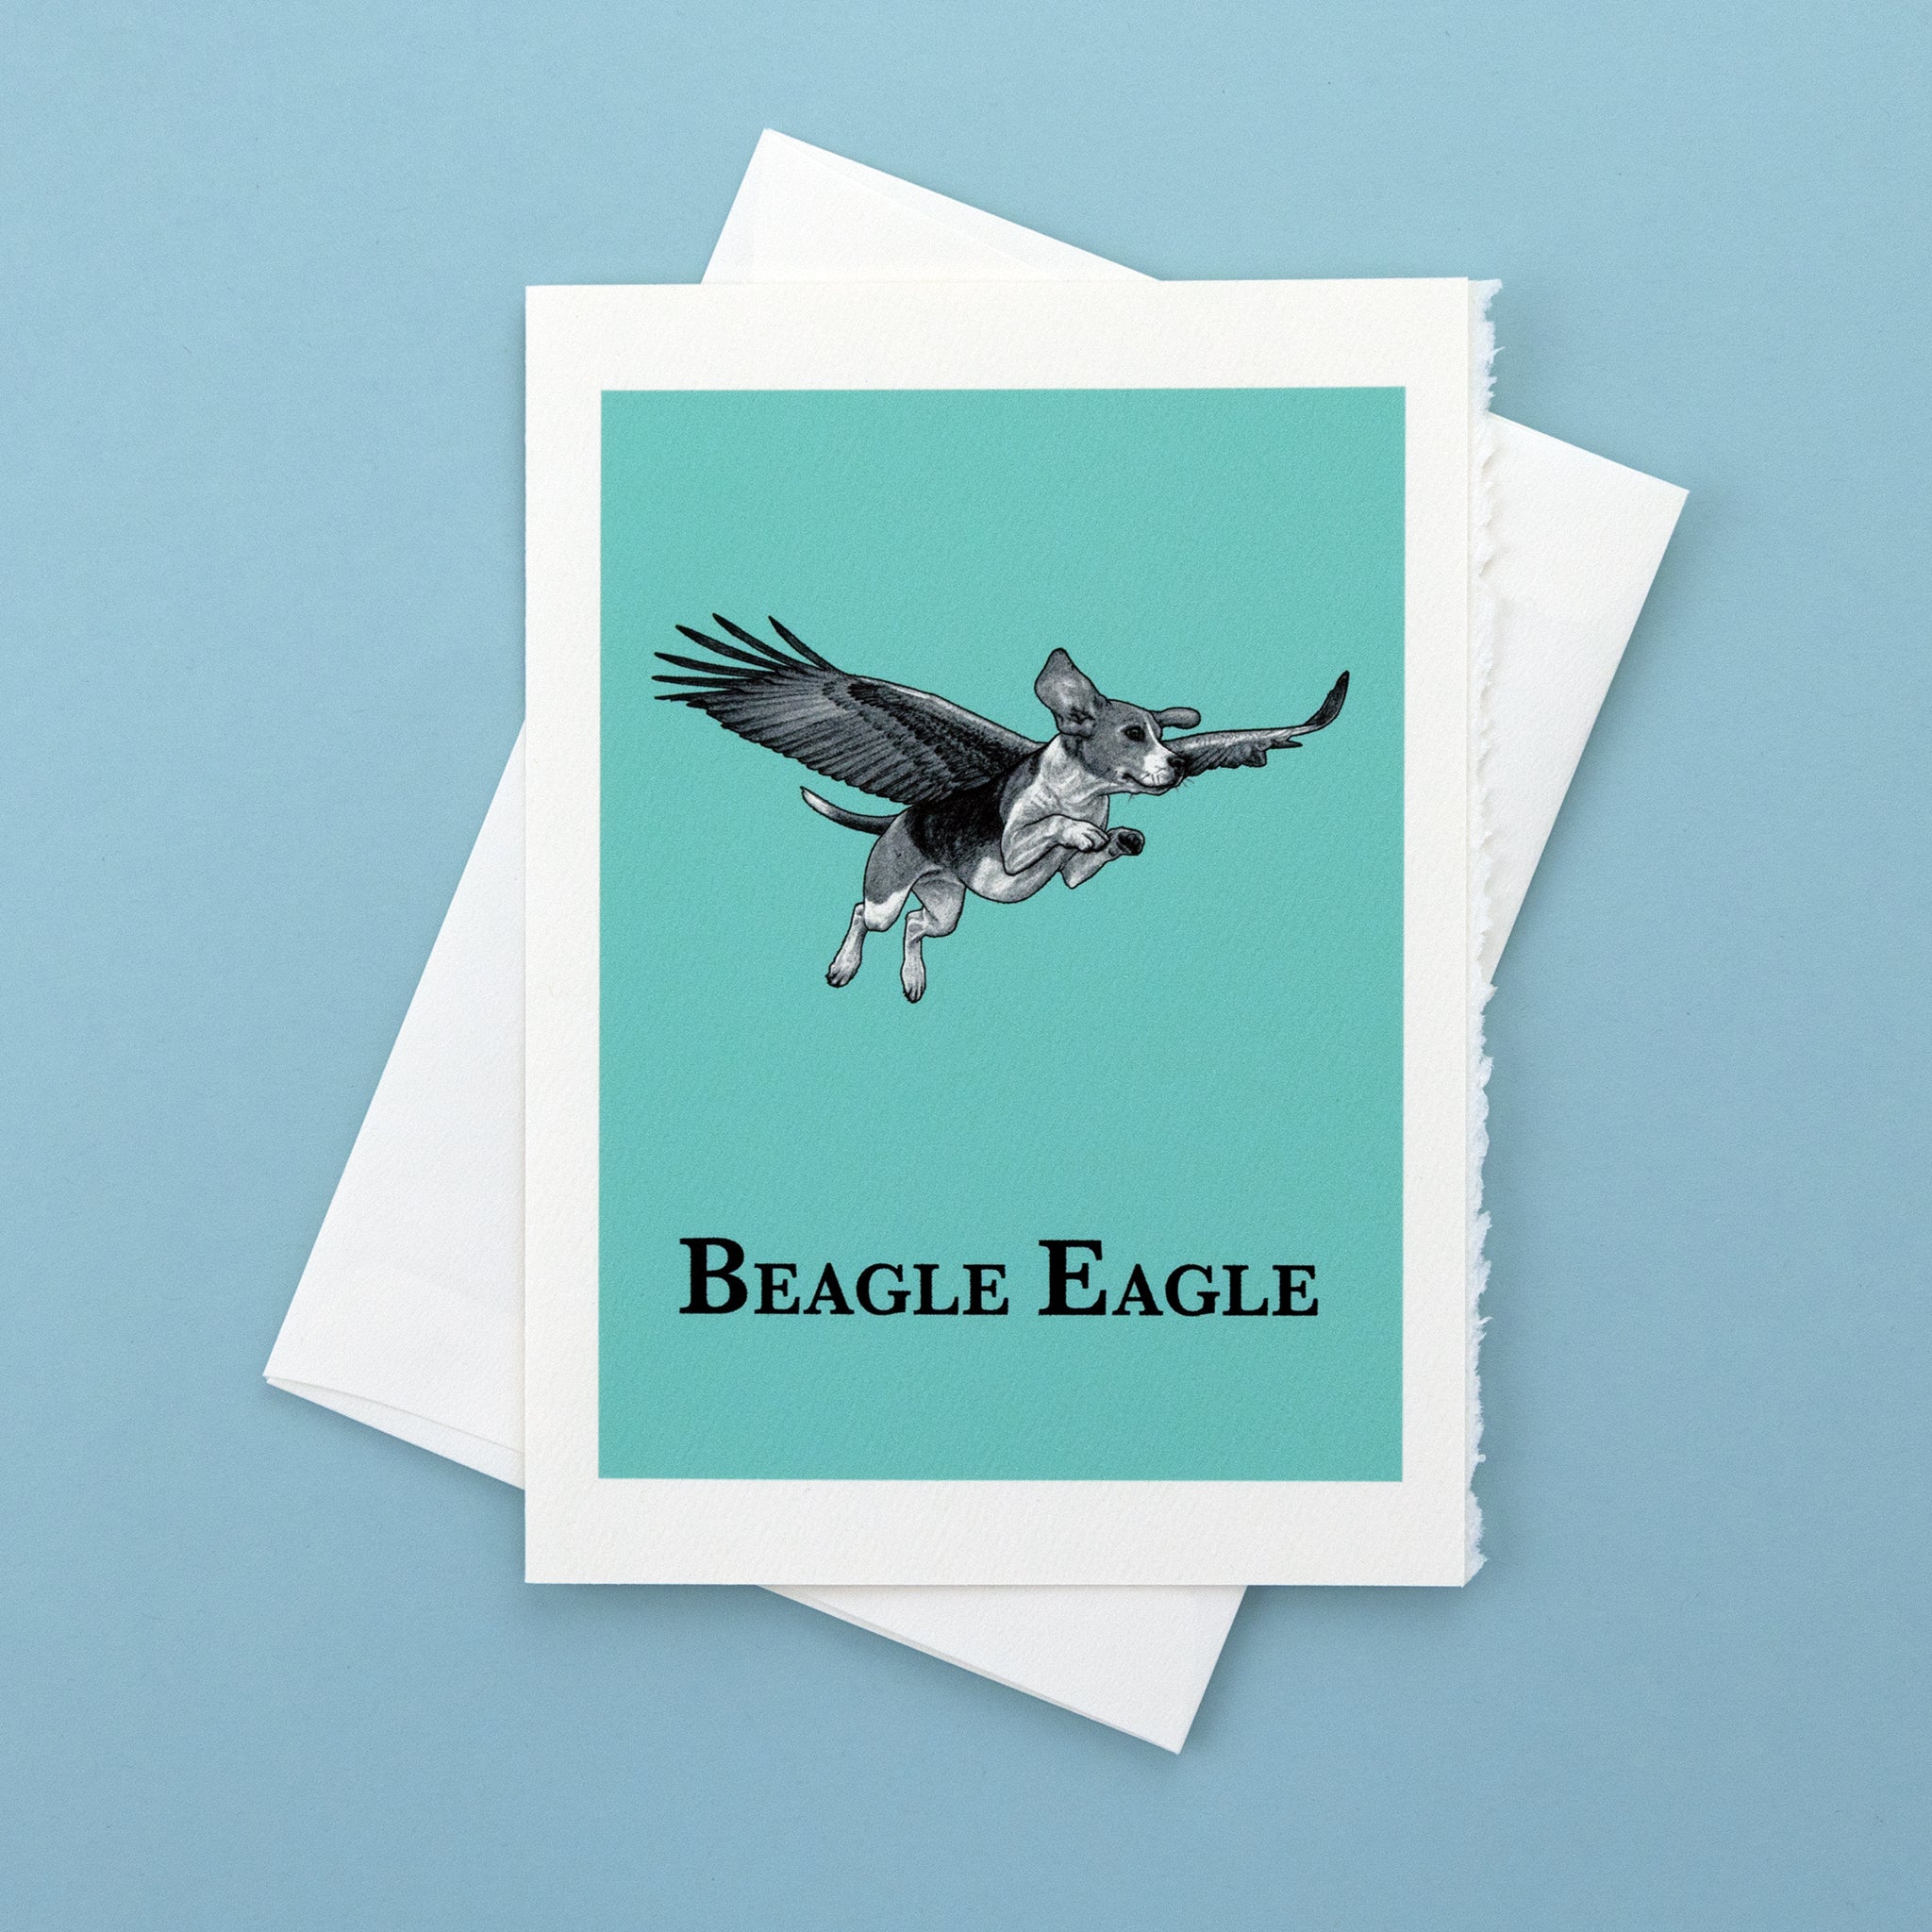 Beagle Eagle 5x7" Greeting Card